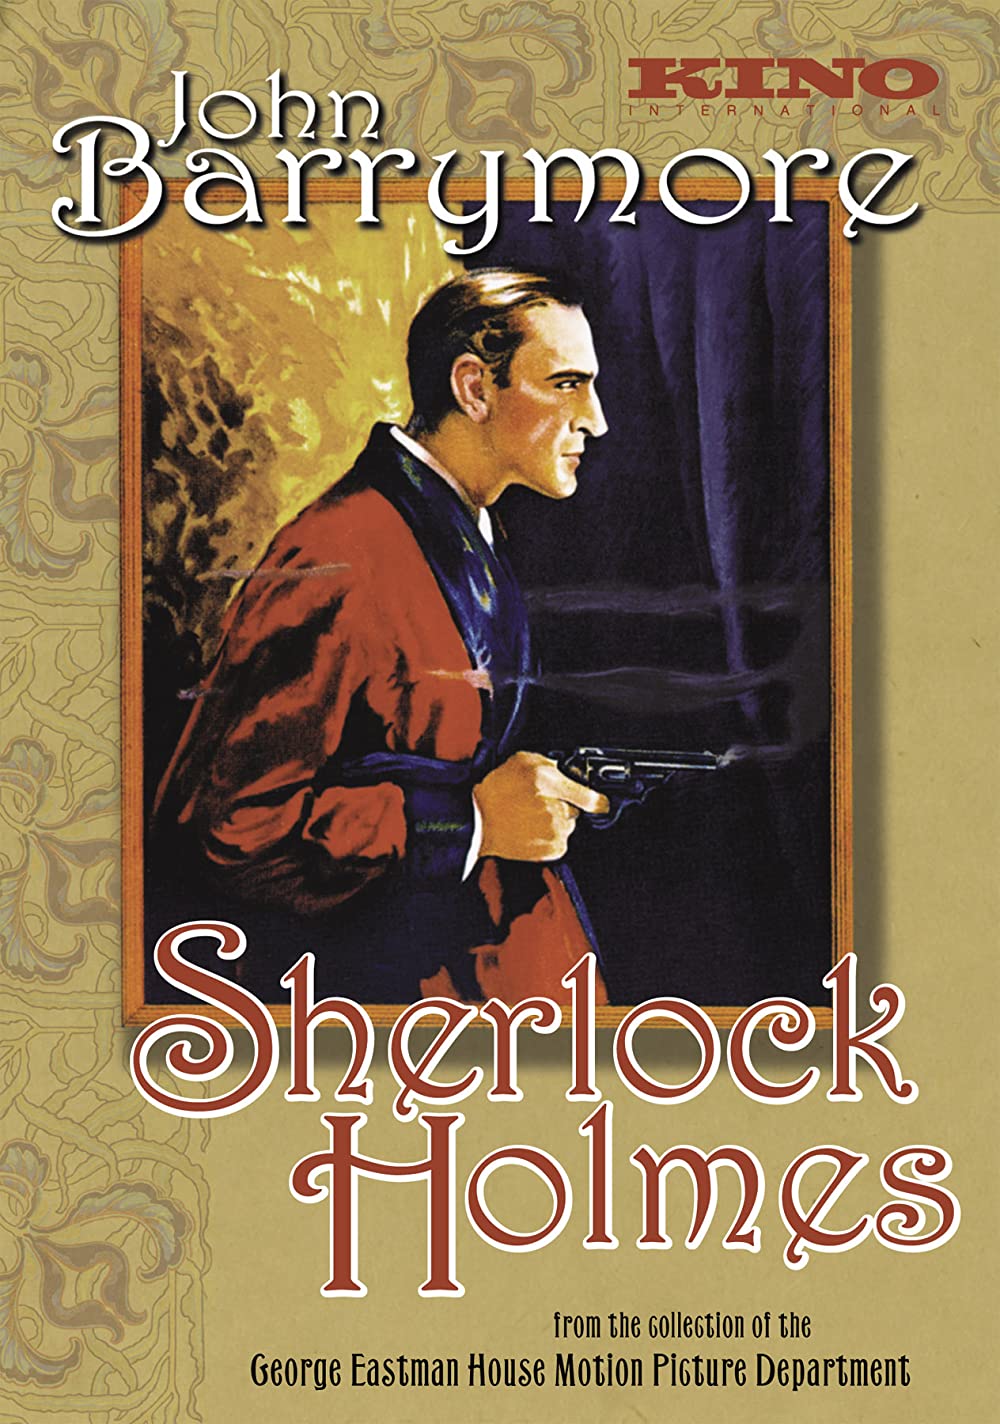 Filmbeschreibung zu Sherlock Holmes (1922)